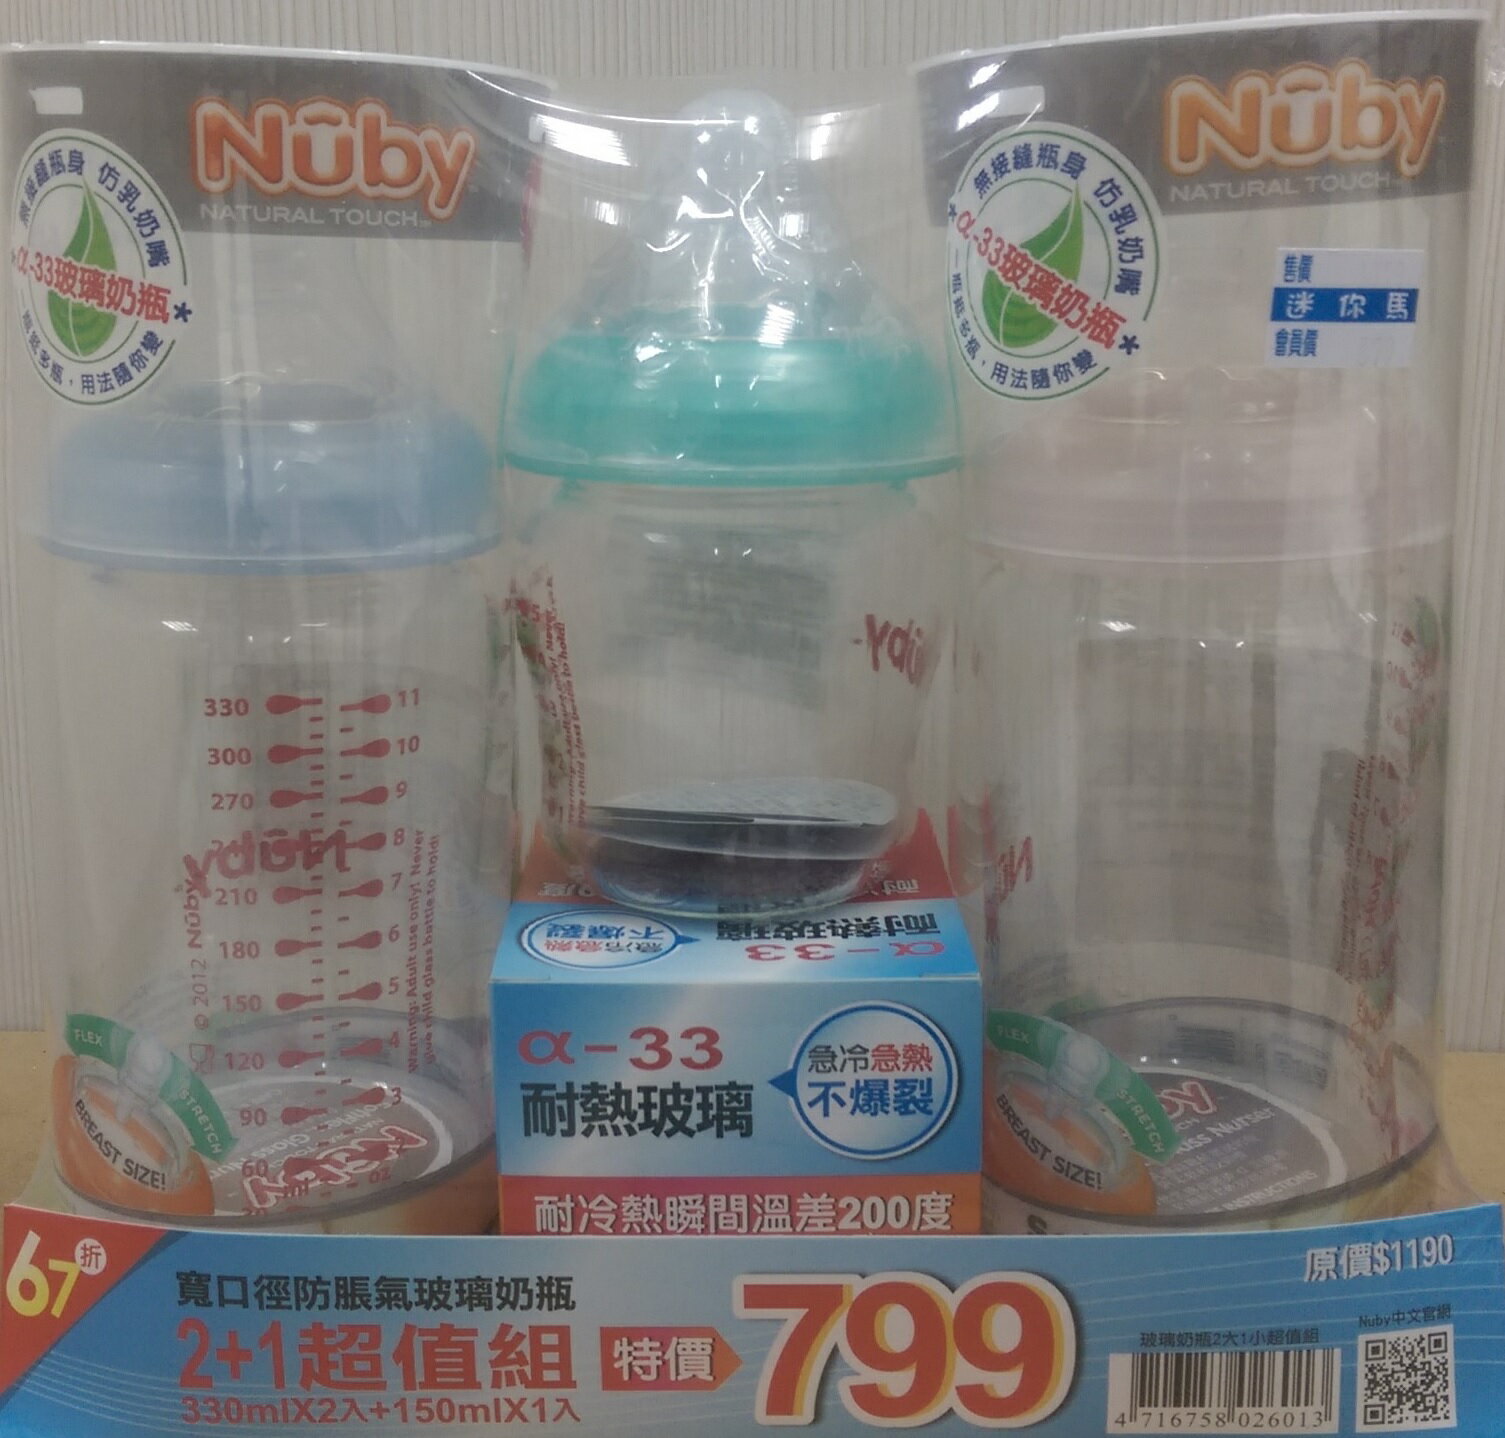 【迷你馬】Nuby 寬口徑防脹氣玻璃奶瓶2+1超值組(330mlx2+150x1) 贈送nacnac草本呵護體驗包